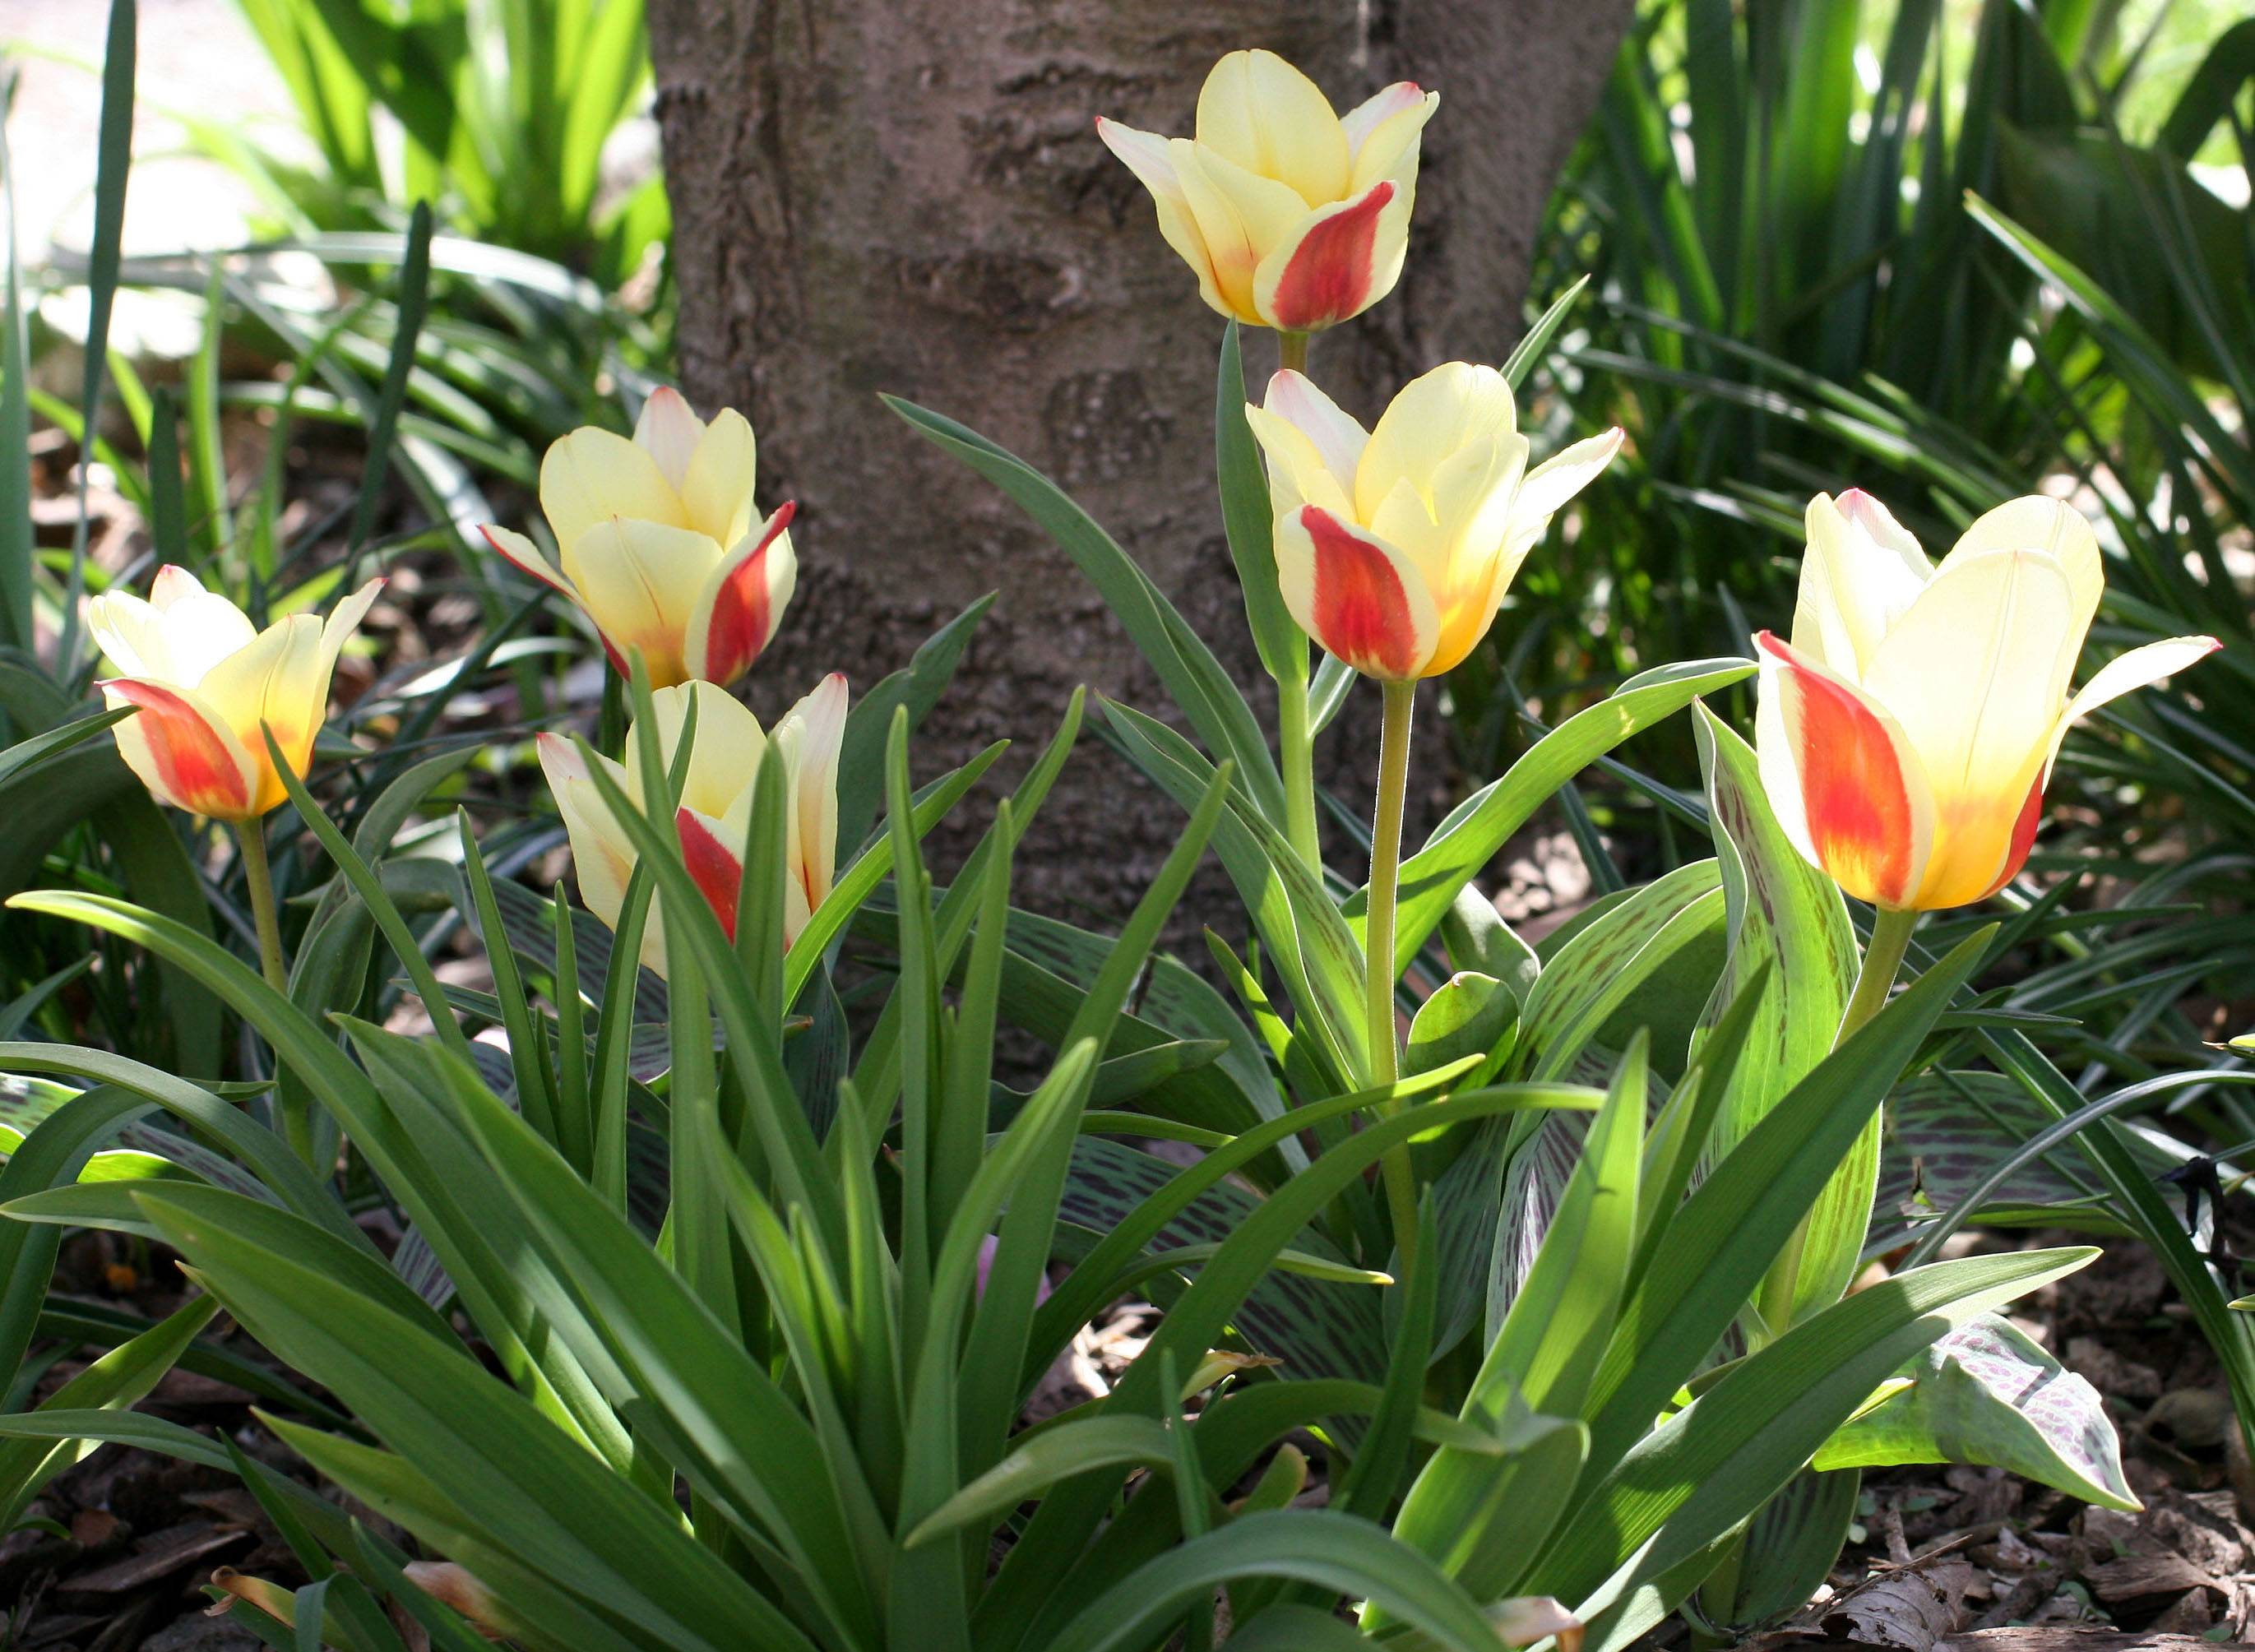 Tulips Around a Tulip Tree